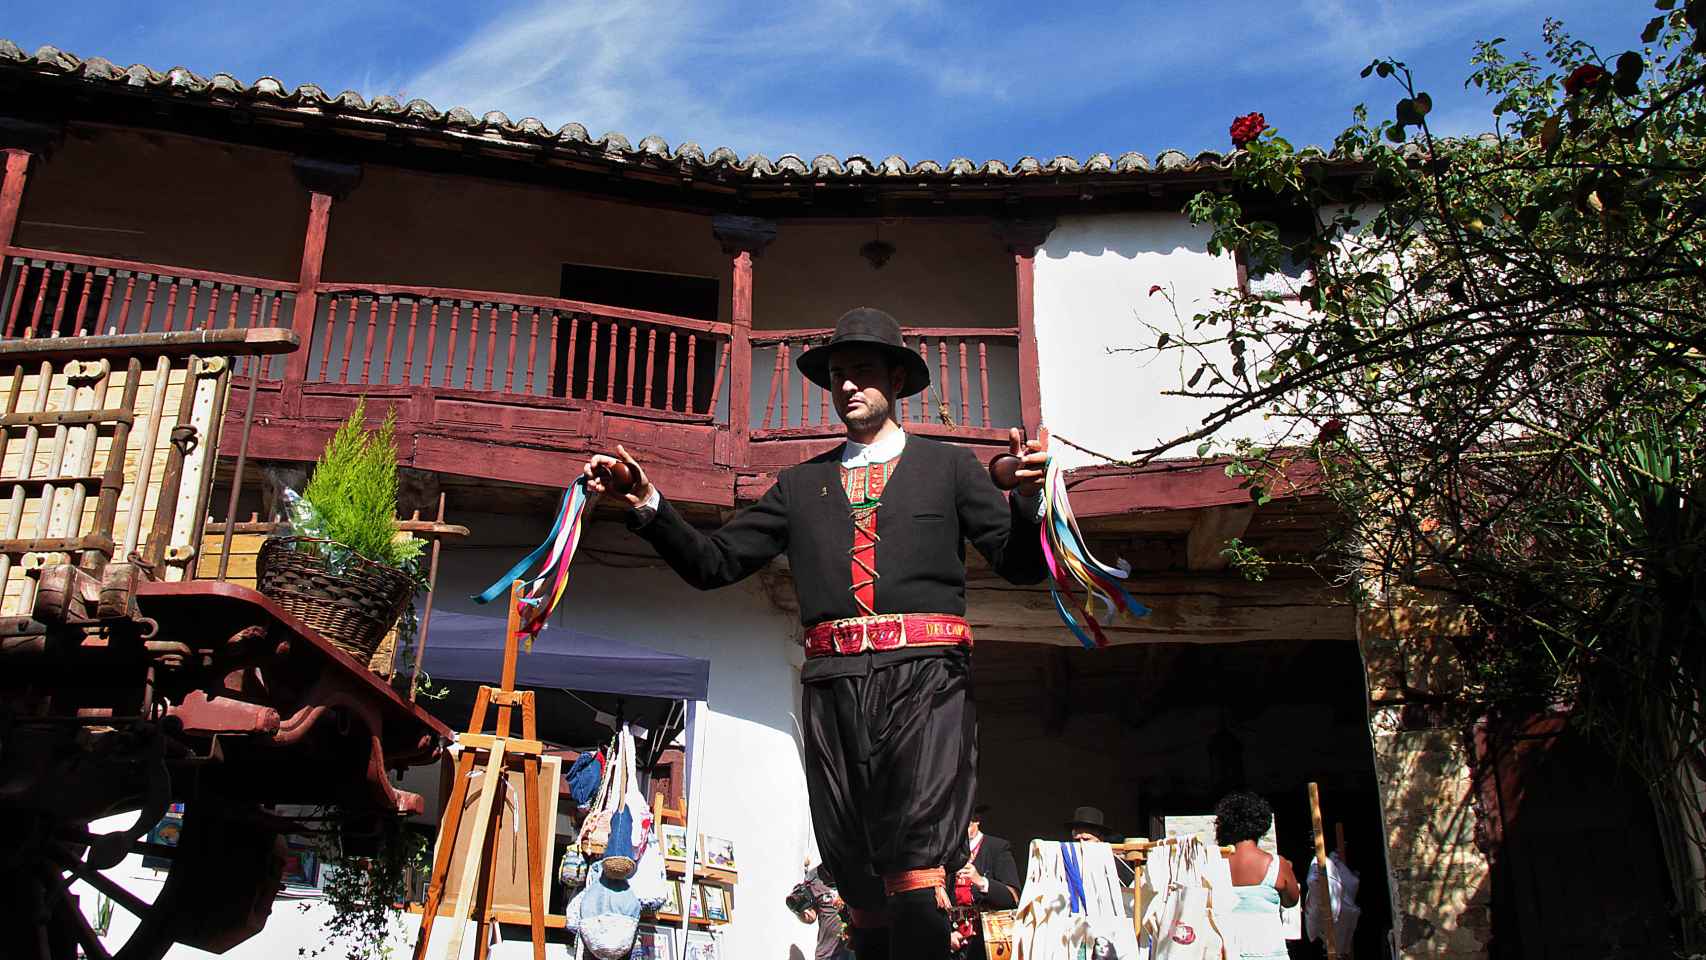 Imagen de un vecino de Santa Colomba de Somoza vestido con el traje tradicional de los maragatos.